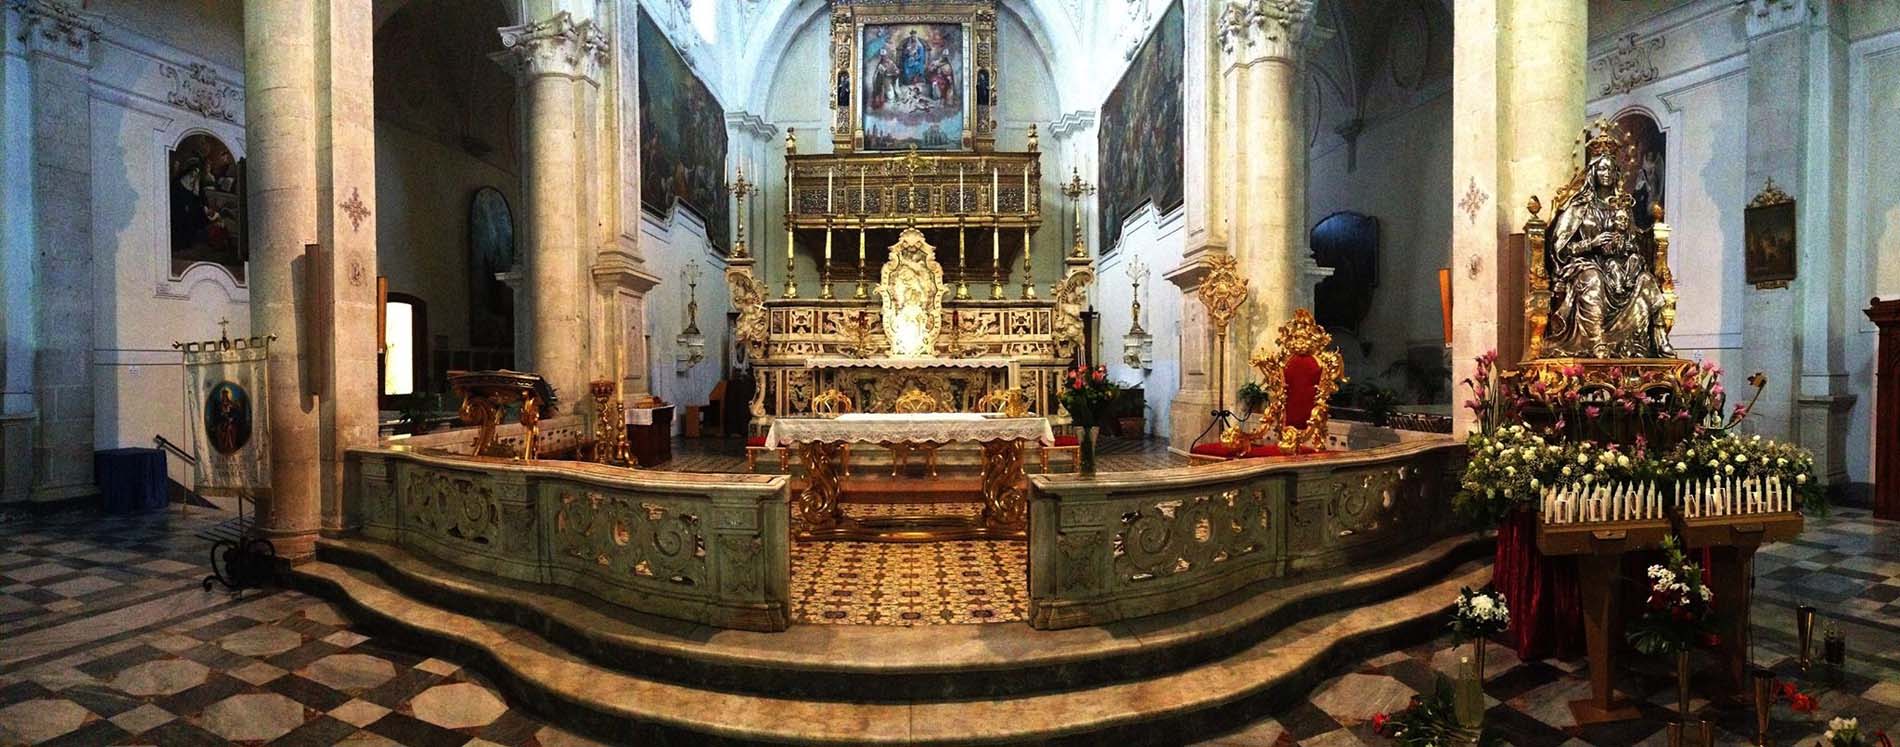 panoramica del presbiterio con la statua processionale della Madonna dei Miracoli (foto Giuseppe D'Ambrosio)